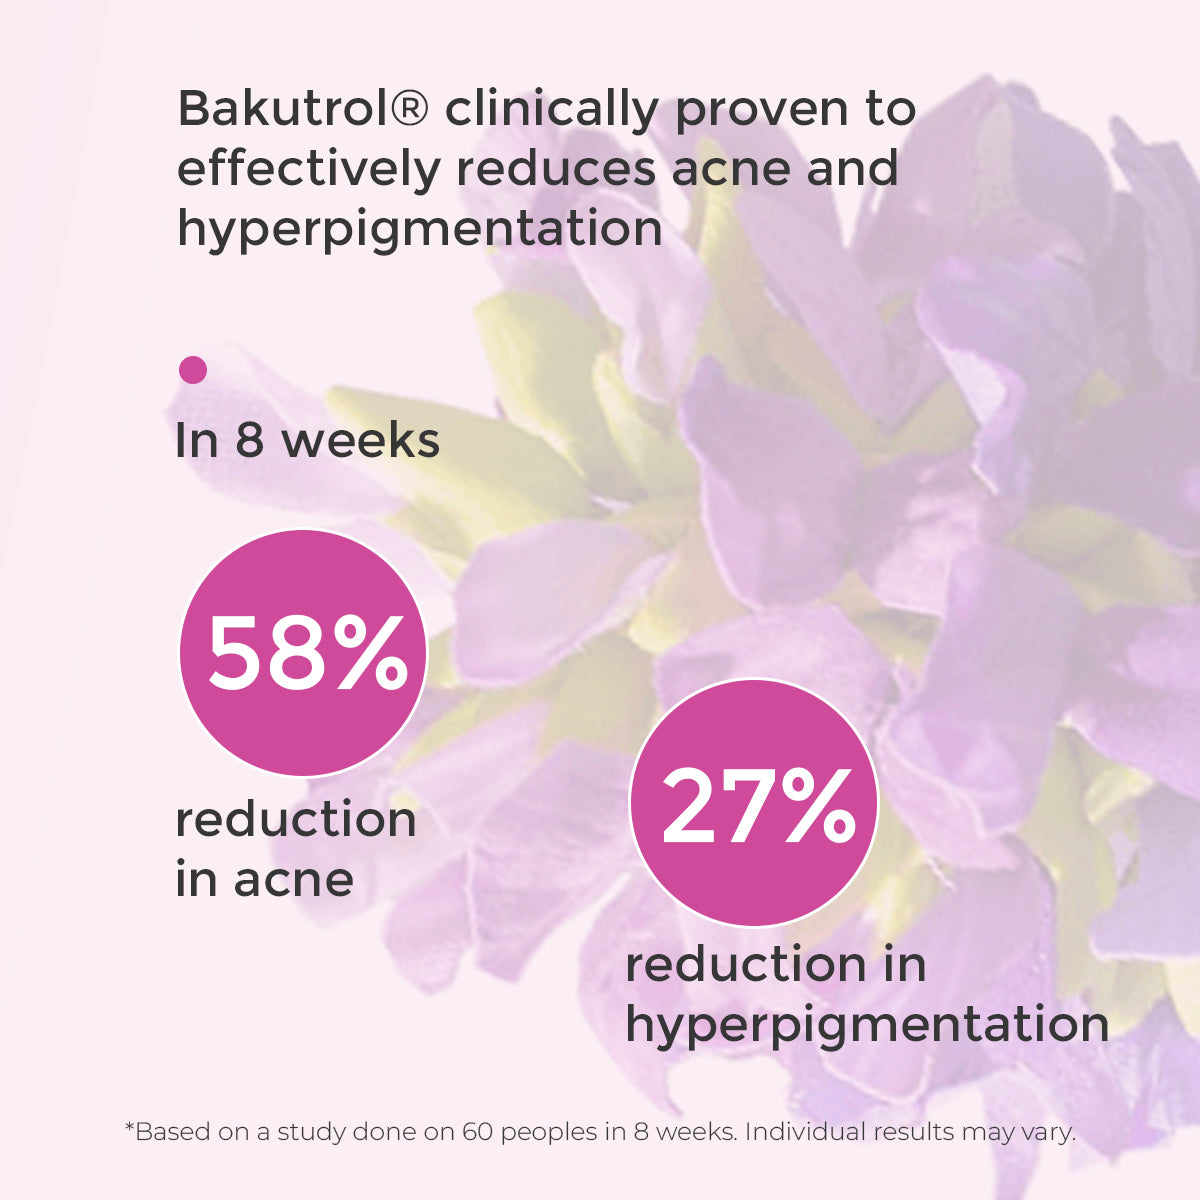 Anti-Acne-and-Hyperpigmentation-Cream-Healthyr-U-Bakutrol